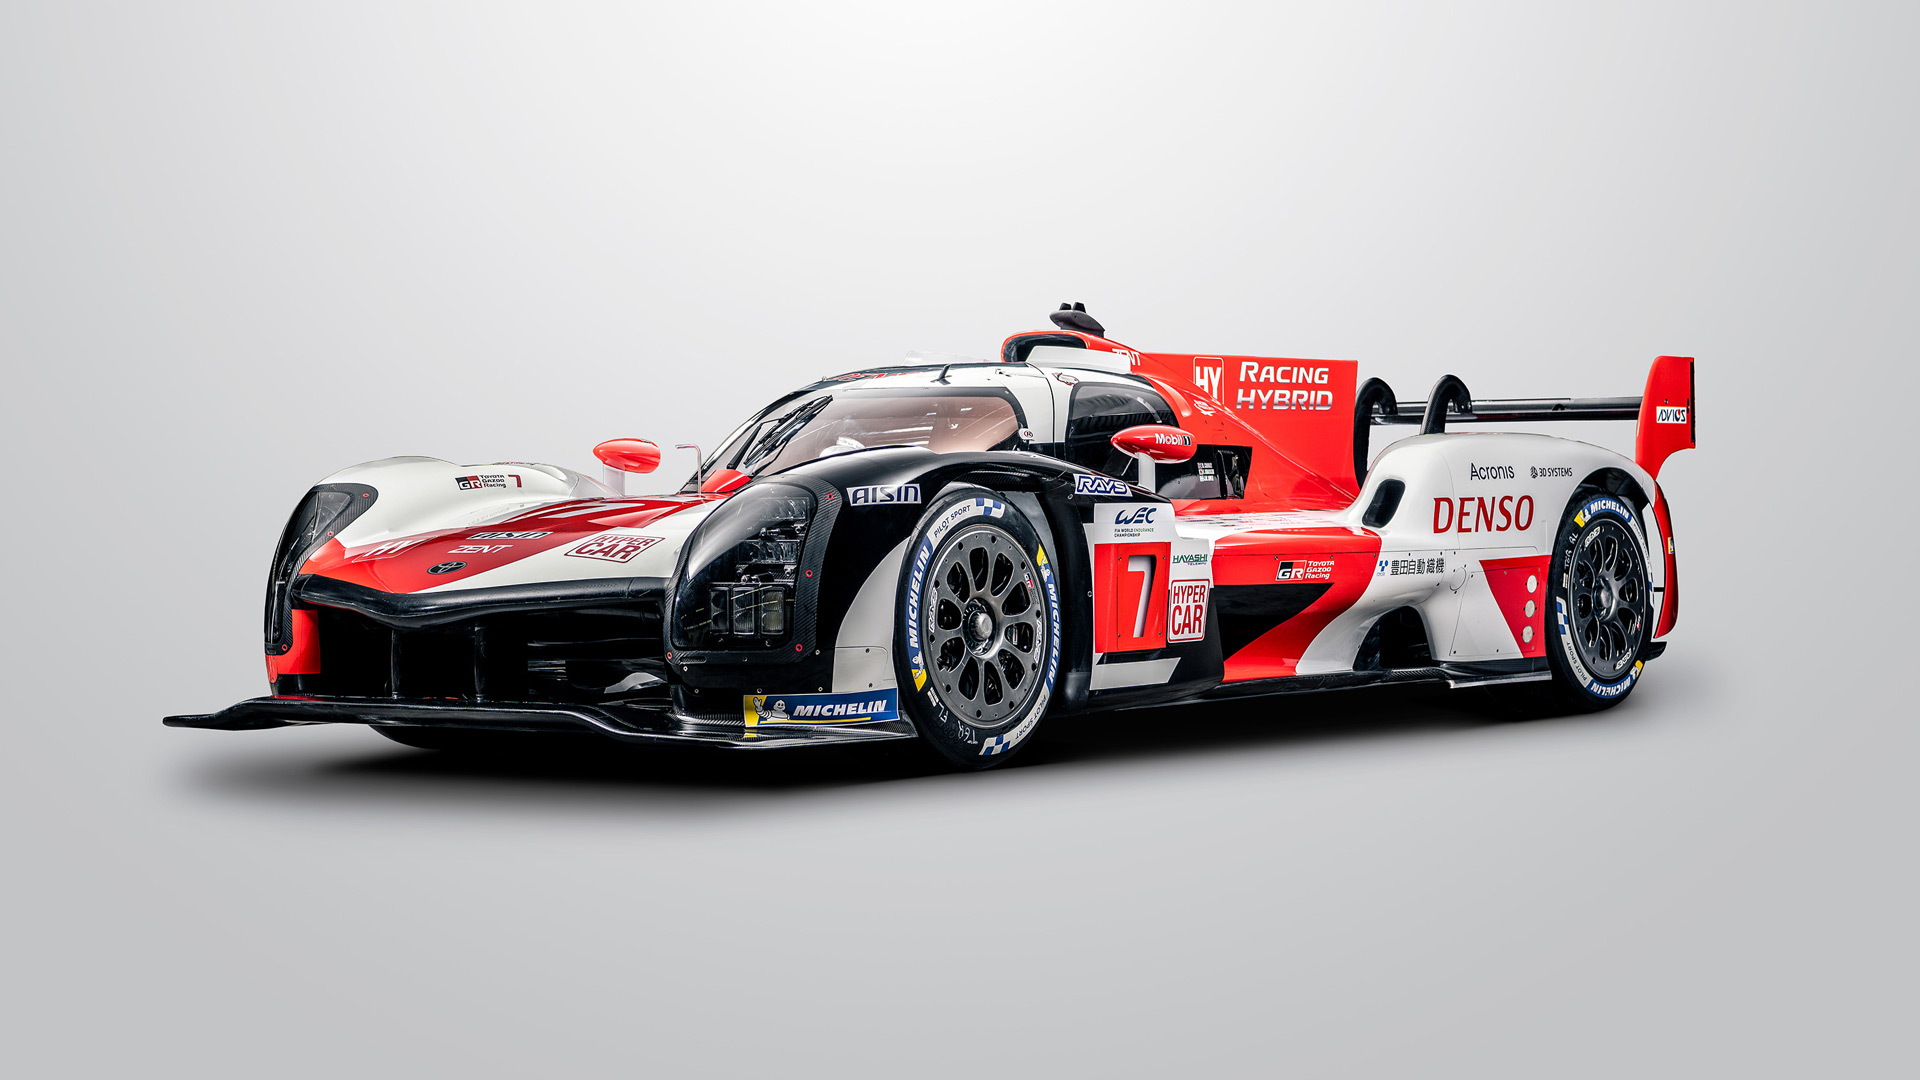 2021 Toyota GR010 Hybrid Le Mans Hypercar race car